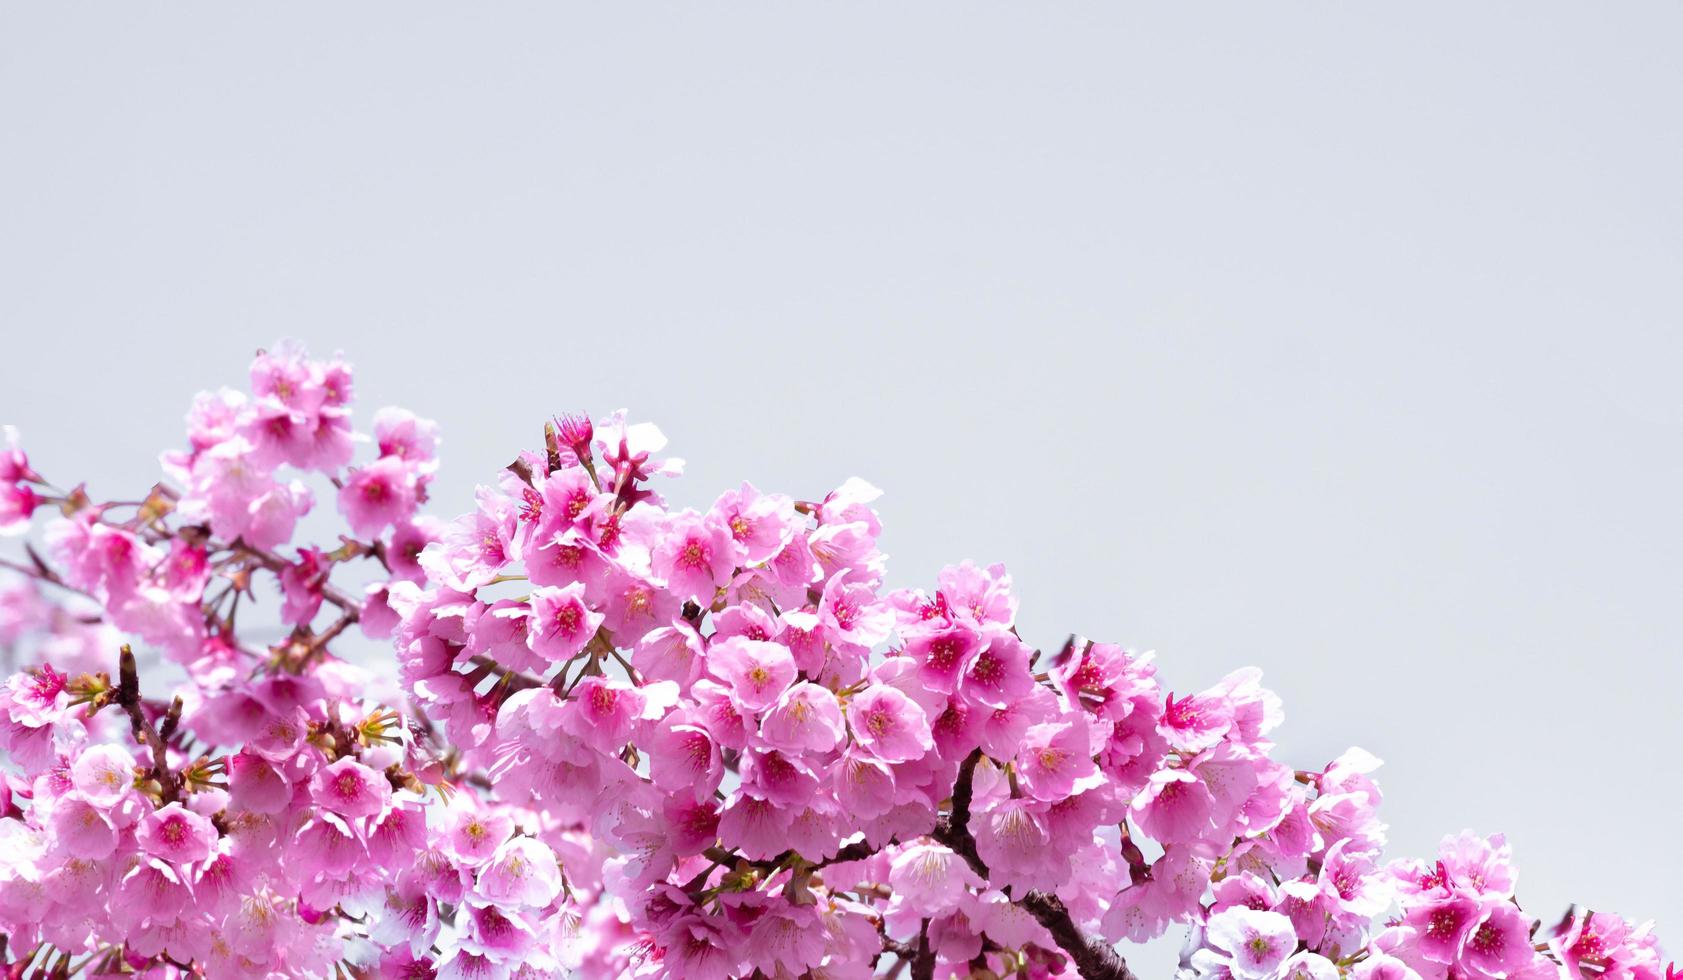 couleur pastel douce belle fleur de cerisier sakura fleurissant avec fondu en fleur de sakura rose pastel, pleine floraison une saison printanière au japon photo